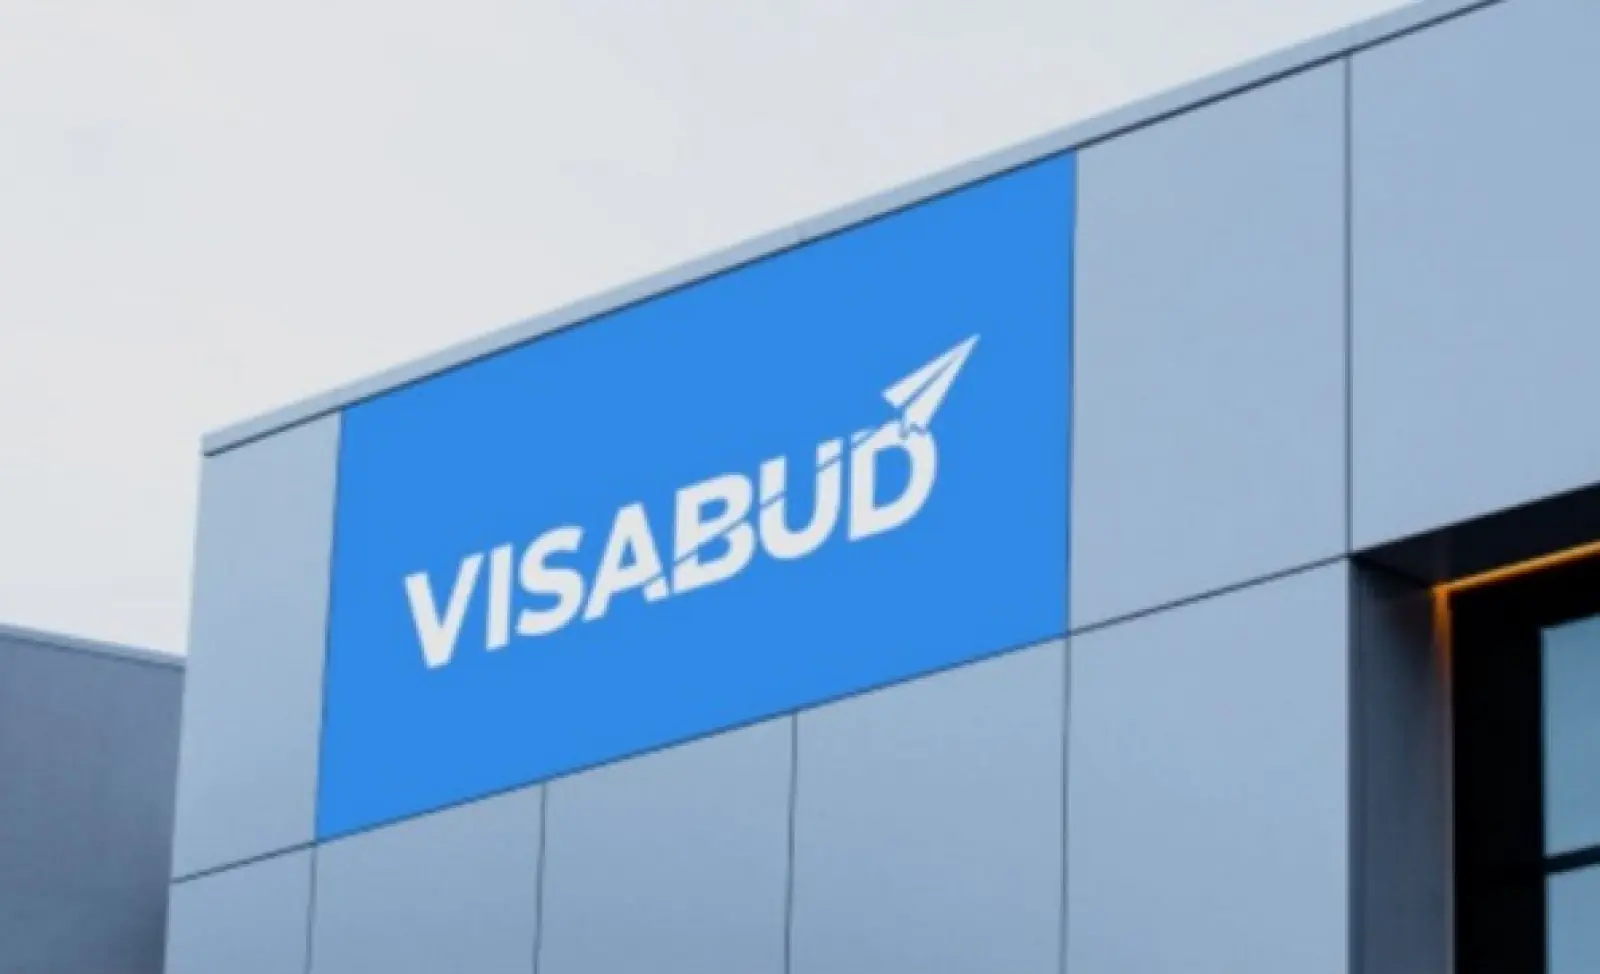 VisaBud: Streamlining the Visa Process Revolution